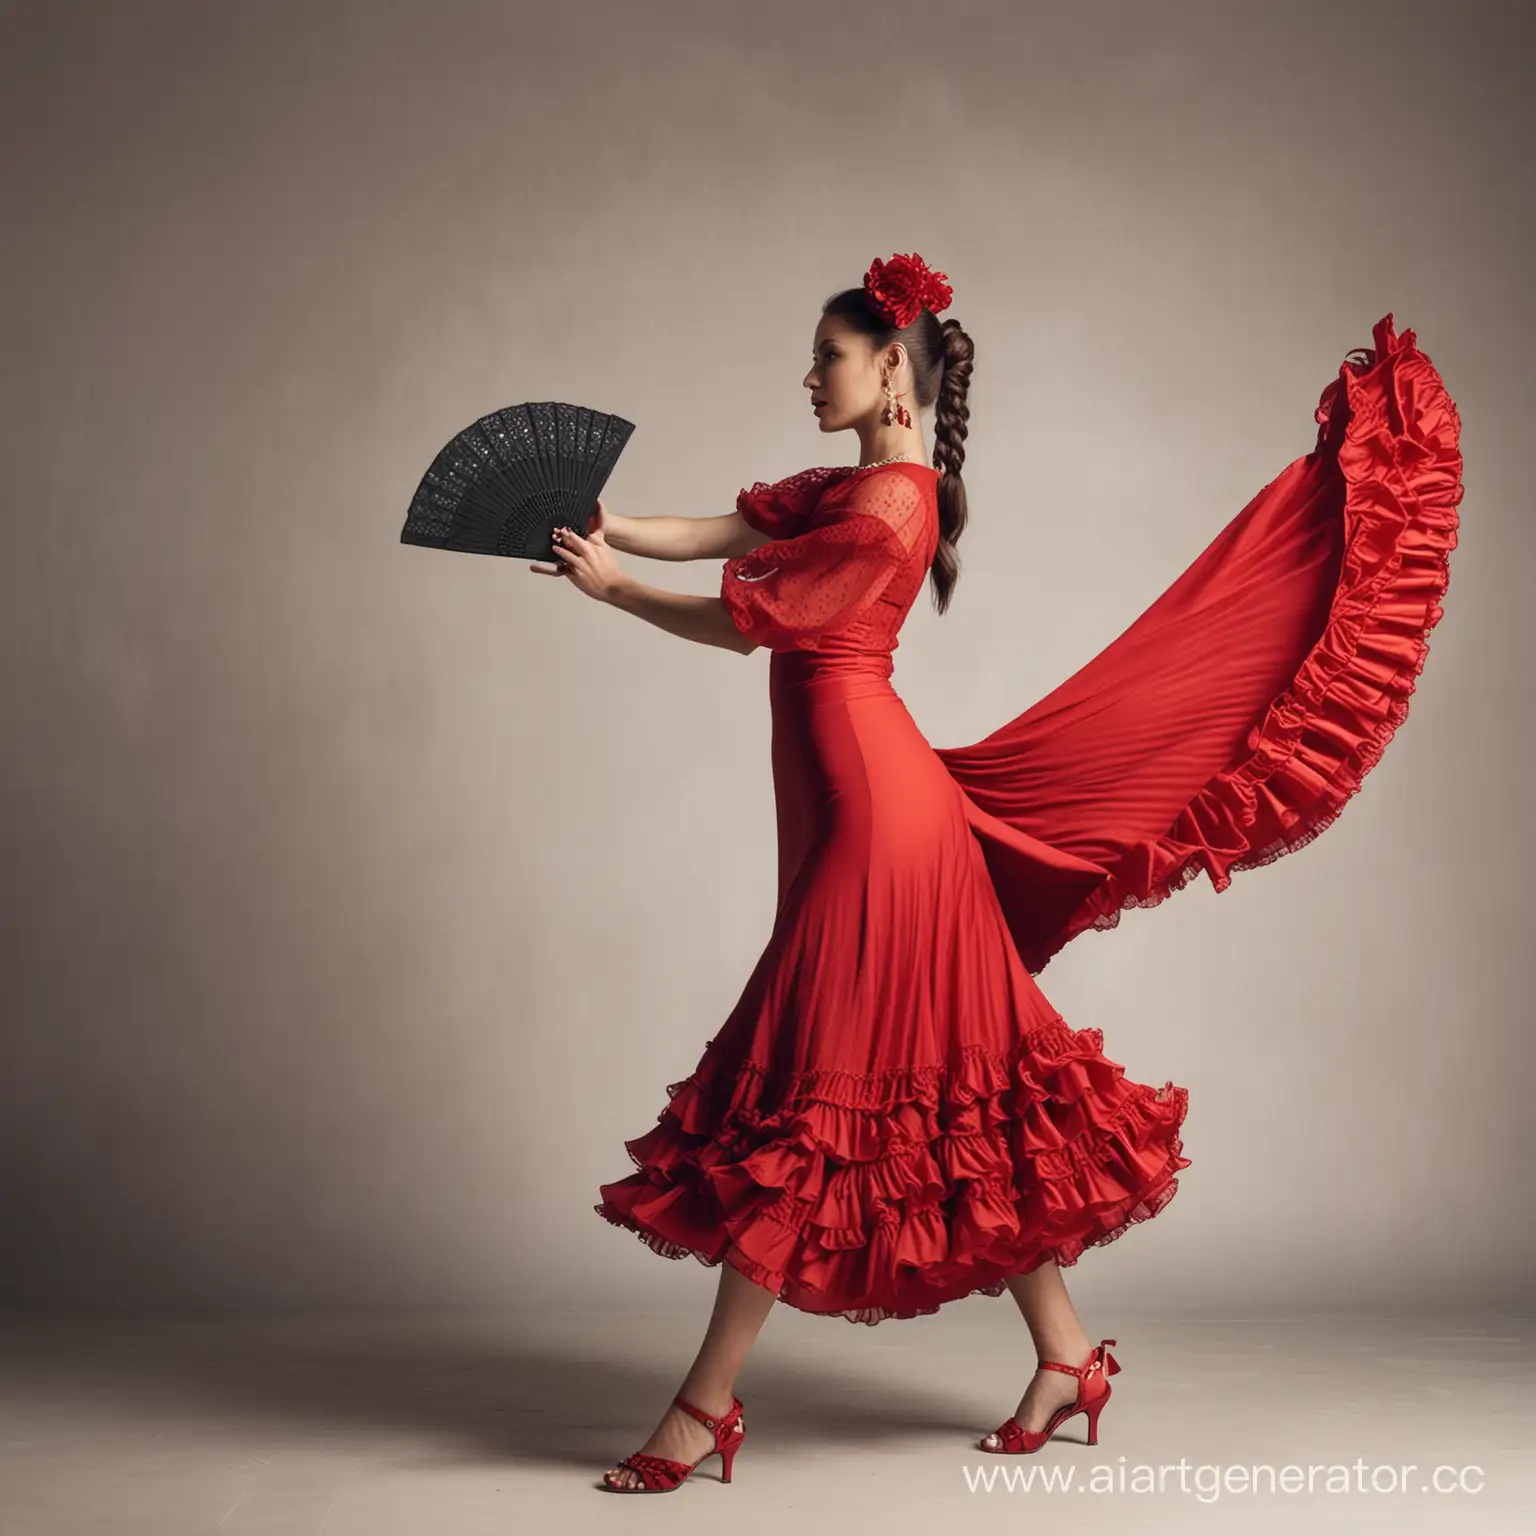 Женщина танцует танец фламенко, в руке женщины веер, на женщине красная длинная юбка, в волосах гребень, на ногах туфли на каблуке